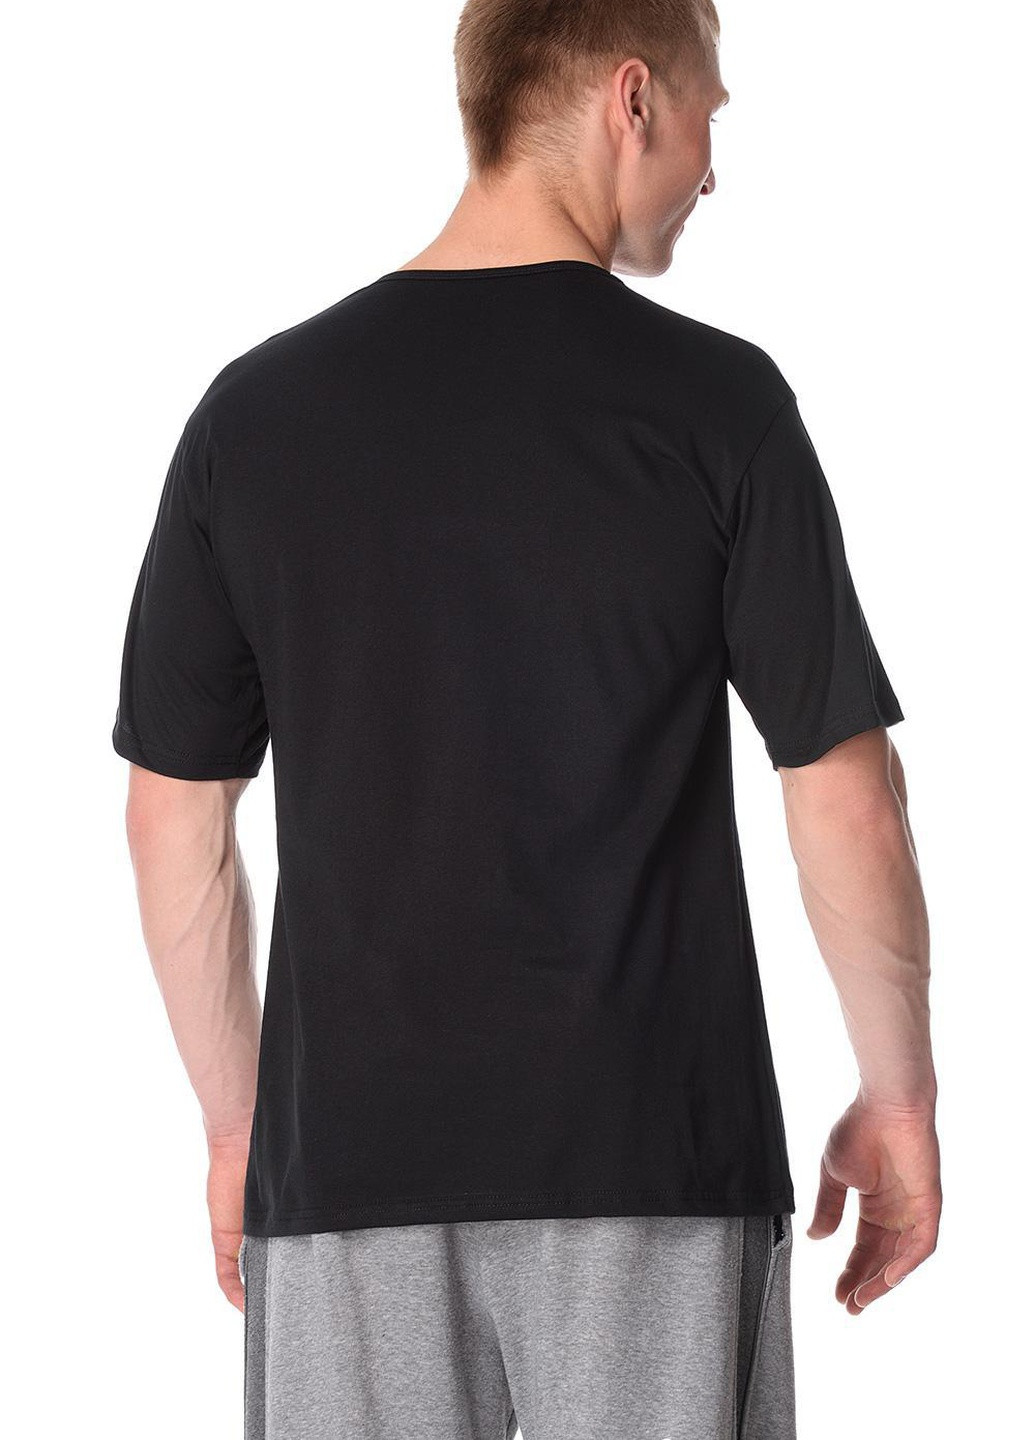 Чорна футболка чоловіча new 5xl чорний 202 Cornette